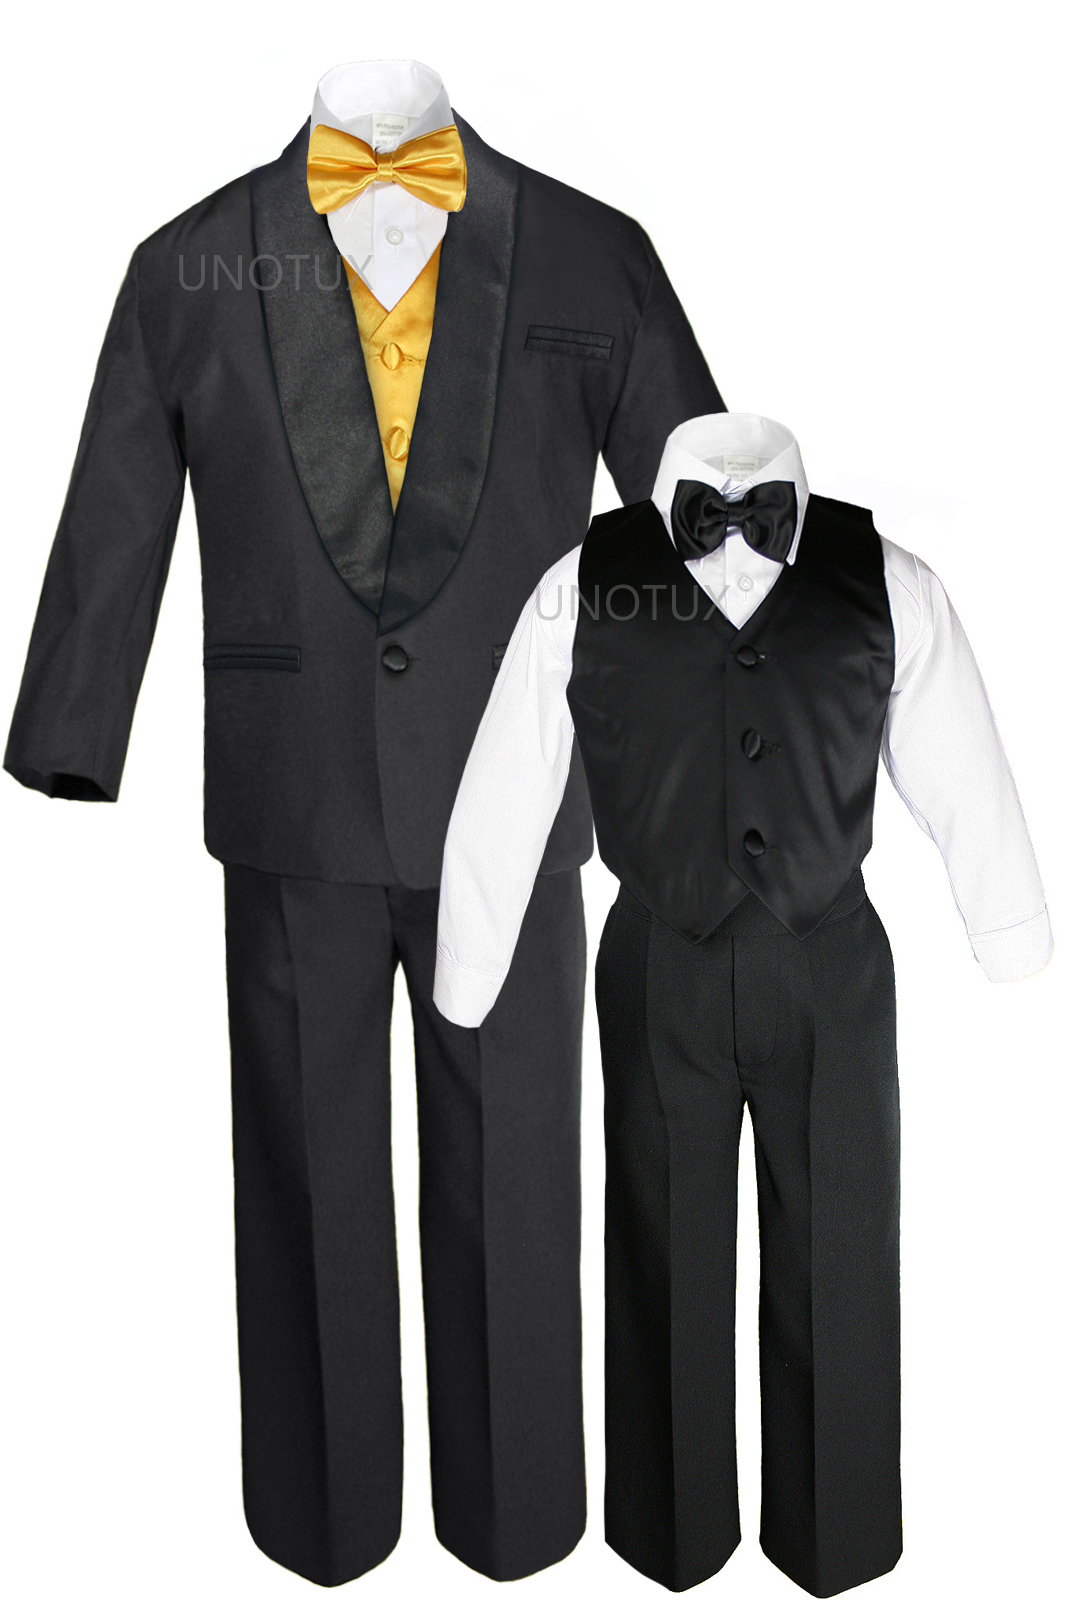 Unotux S M L XL 2T 3T 4T Baby Infant Toddler Black Formal Wedding Party Boy Shawl Lapel Suit Tuxedo Outfit 7pc Yellow Vest Set